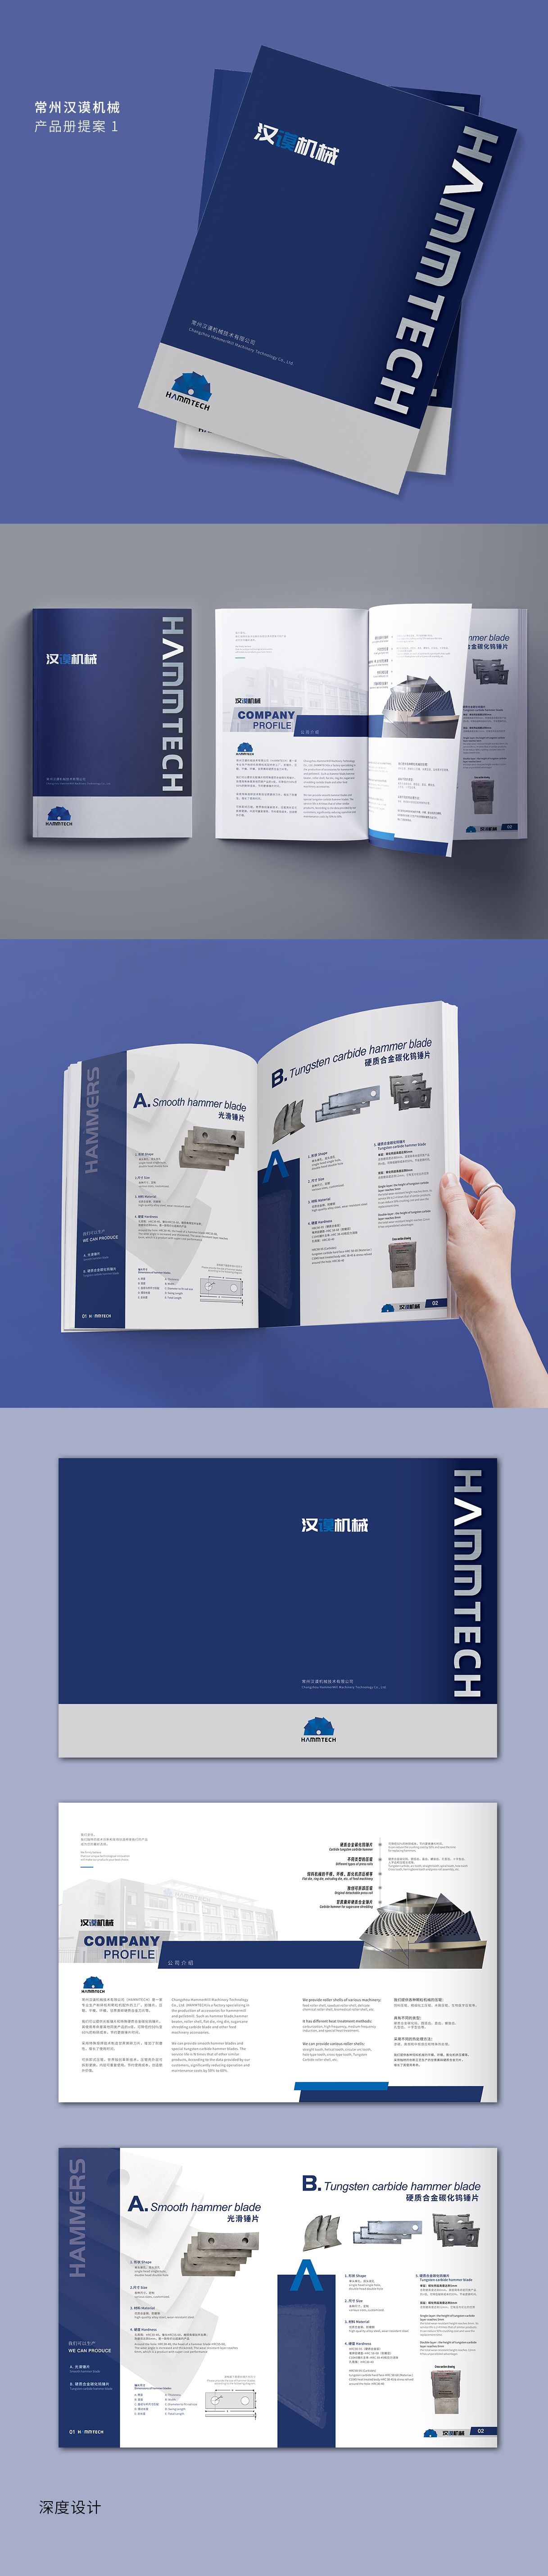 苏州奥斯伟尔科技产品目录册设计 飞特网 会员原创画册设计